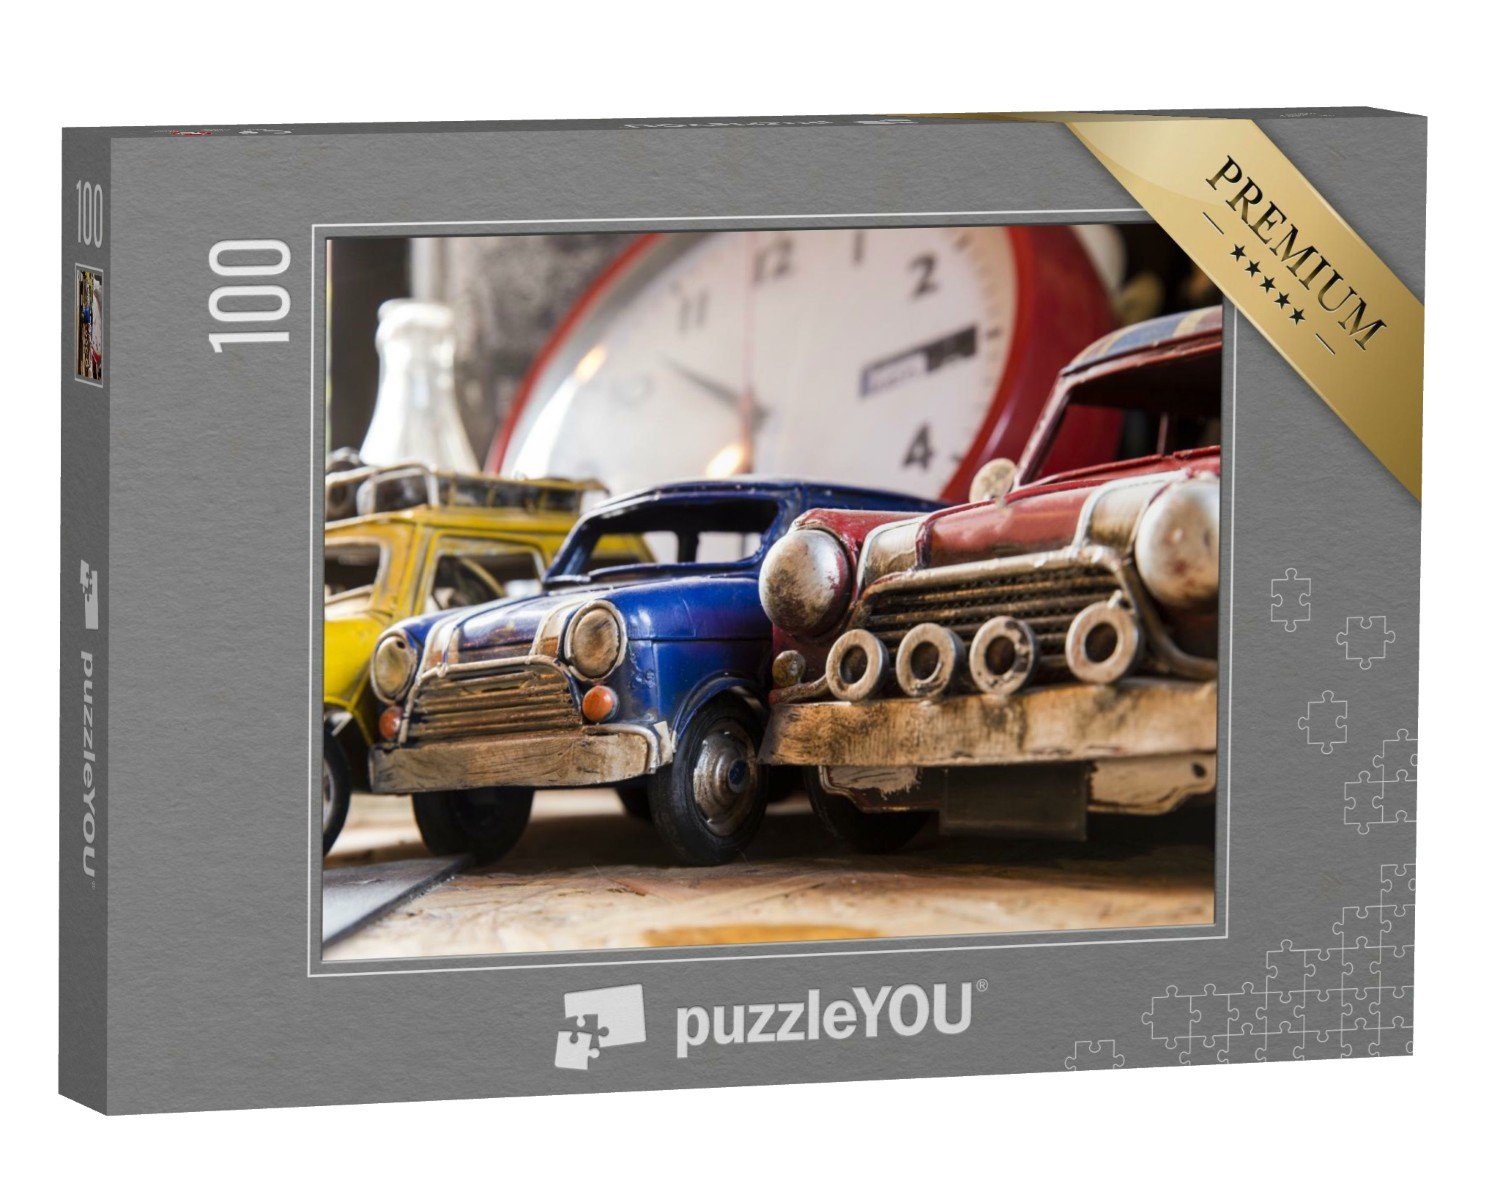 puzzleYOU Puzzle Spielzeugautos aus vergangenen Zeiten, 100 Puzzleteile, puzzleYOU-Kollektionen Nostalgie